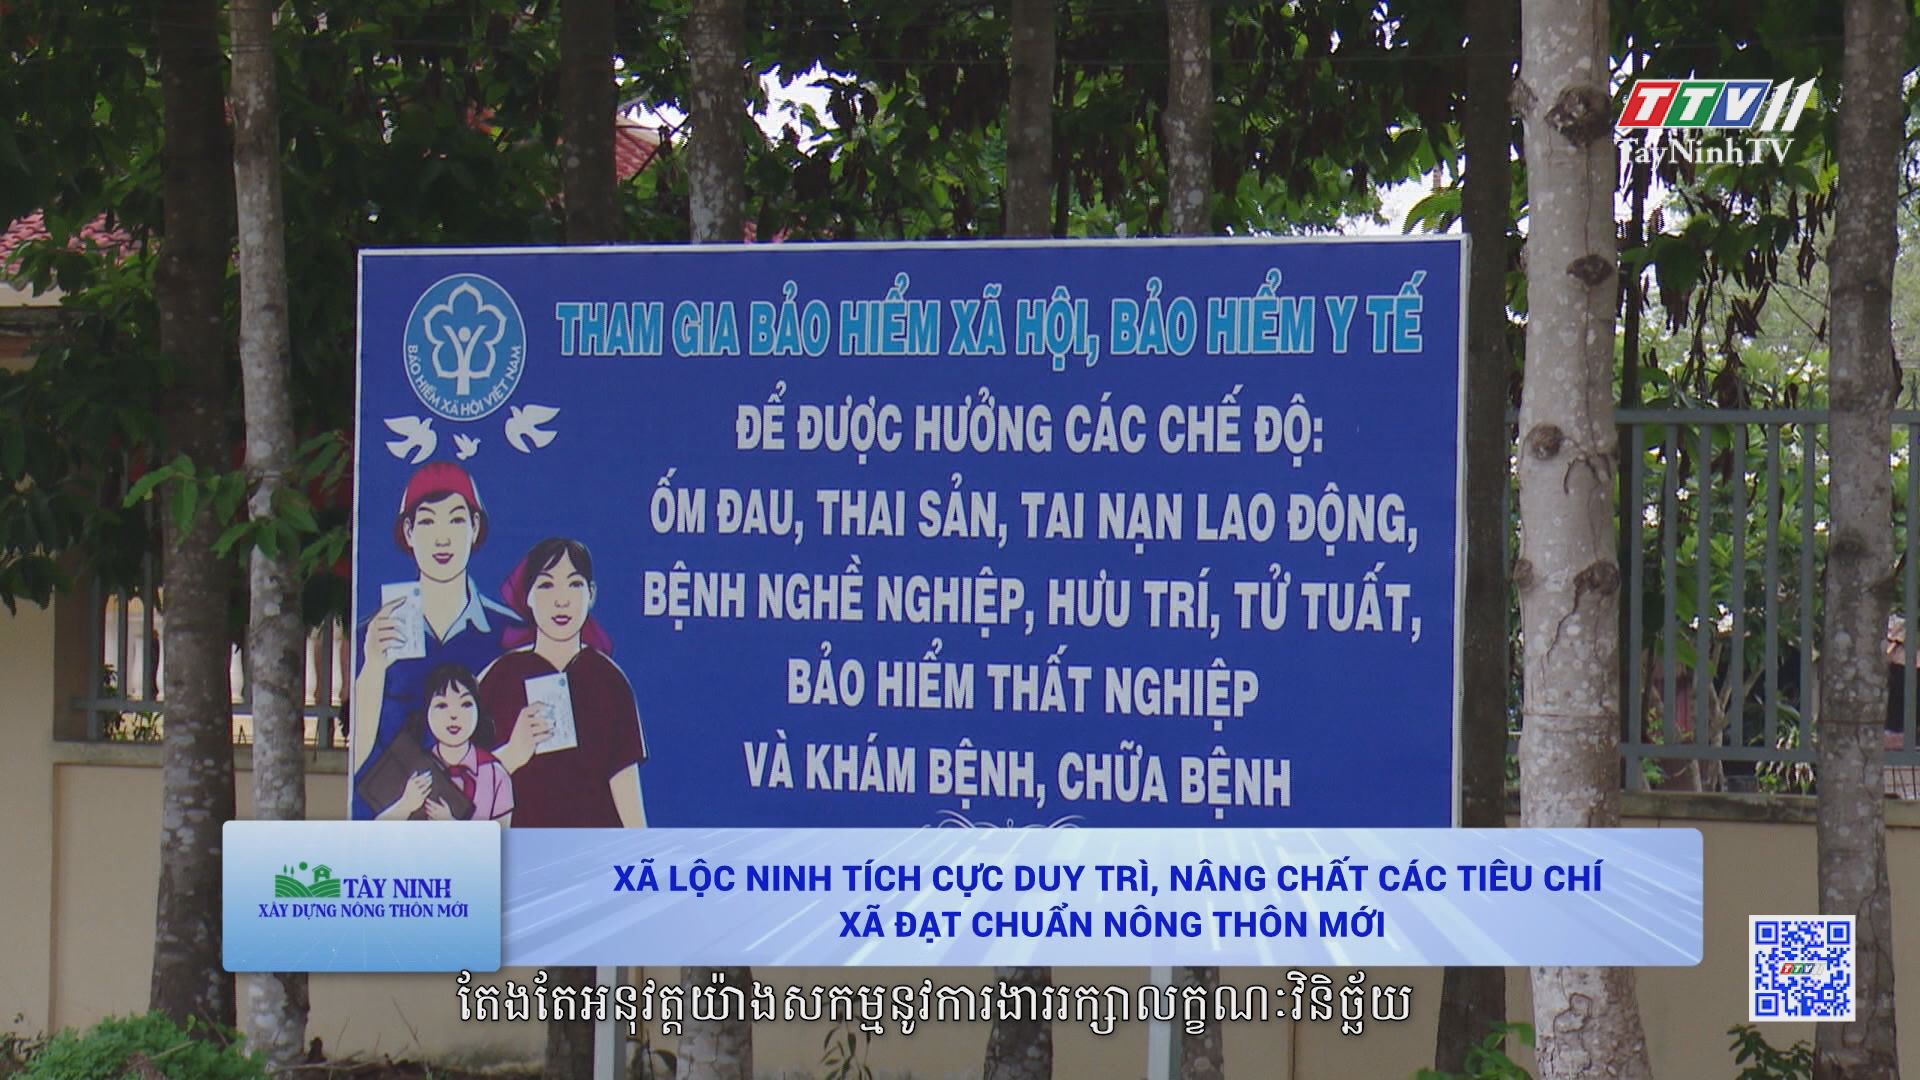 Xã Lộc Ninh tích cực duy trì, nâng chất các tiêu chí xã đạt chuẩn nông thôn mới | TÂY NINH XÂY DỰNG NÔNG THÔN MỚI | TayNinhTVToday